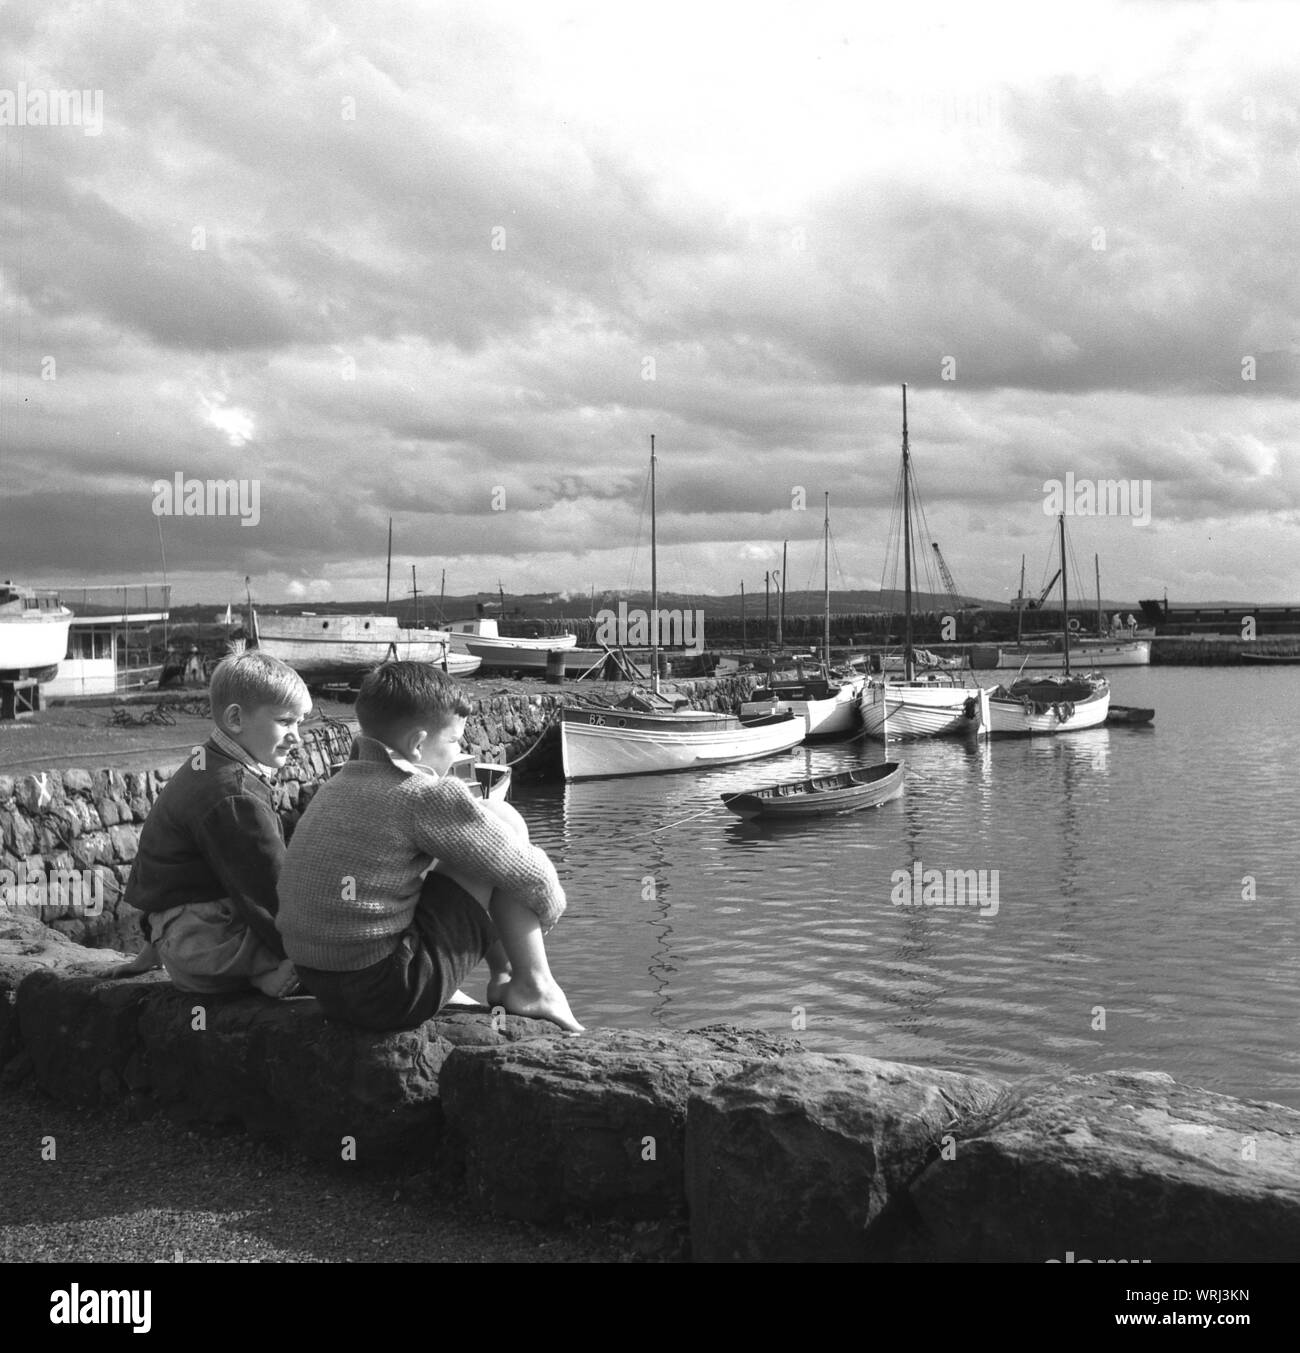 1950s, históricos, dos muchachos sentados en el muro del puerto mirando los barcos y el mar, Co. de Antrim, Irlanda del Norte. Foto de stock